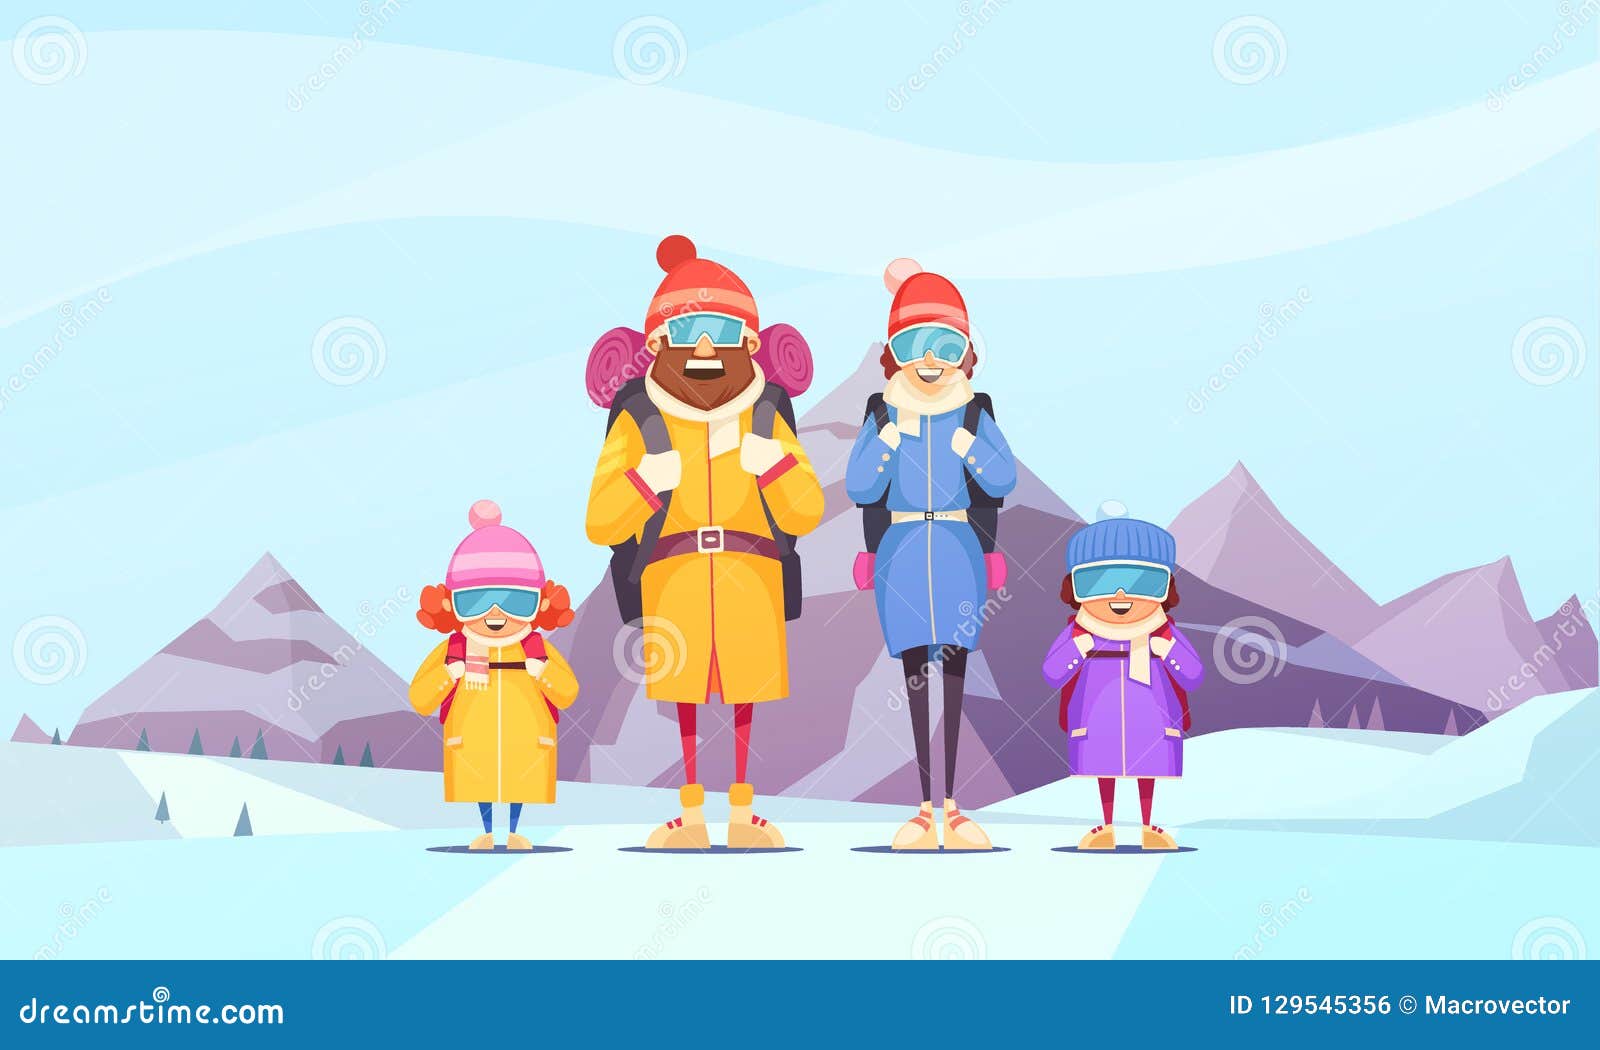 mountaineering family cartoon